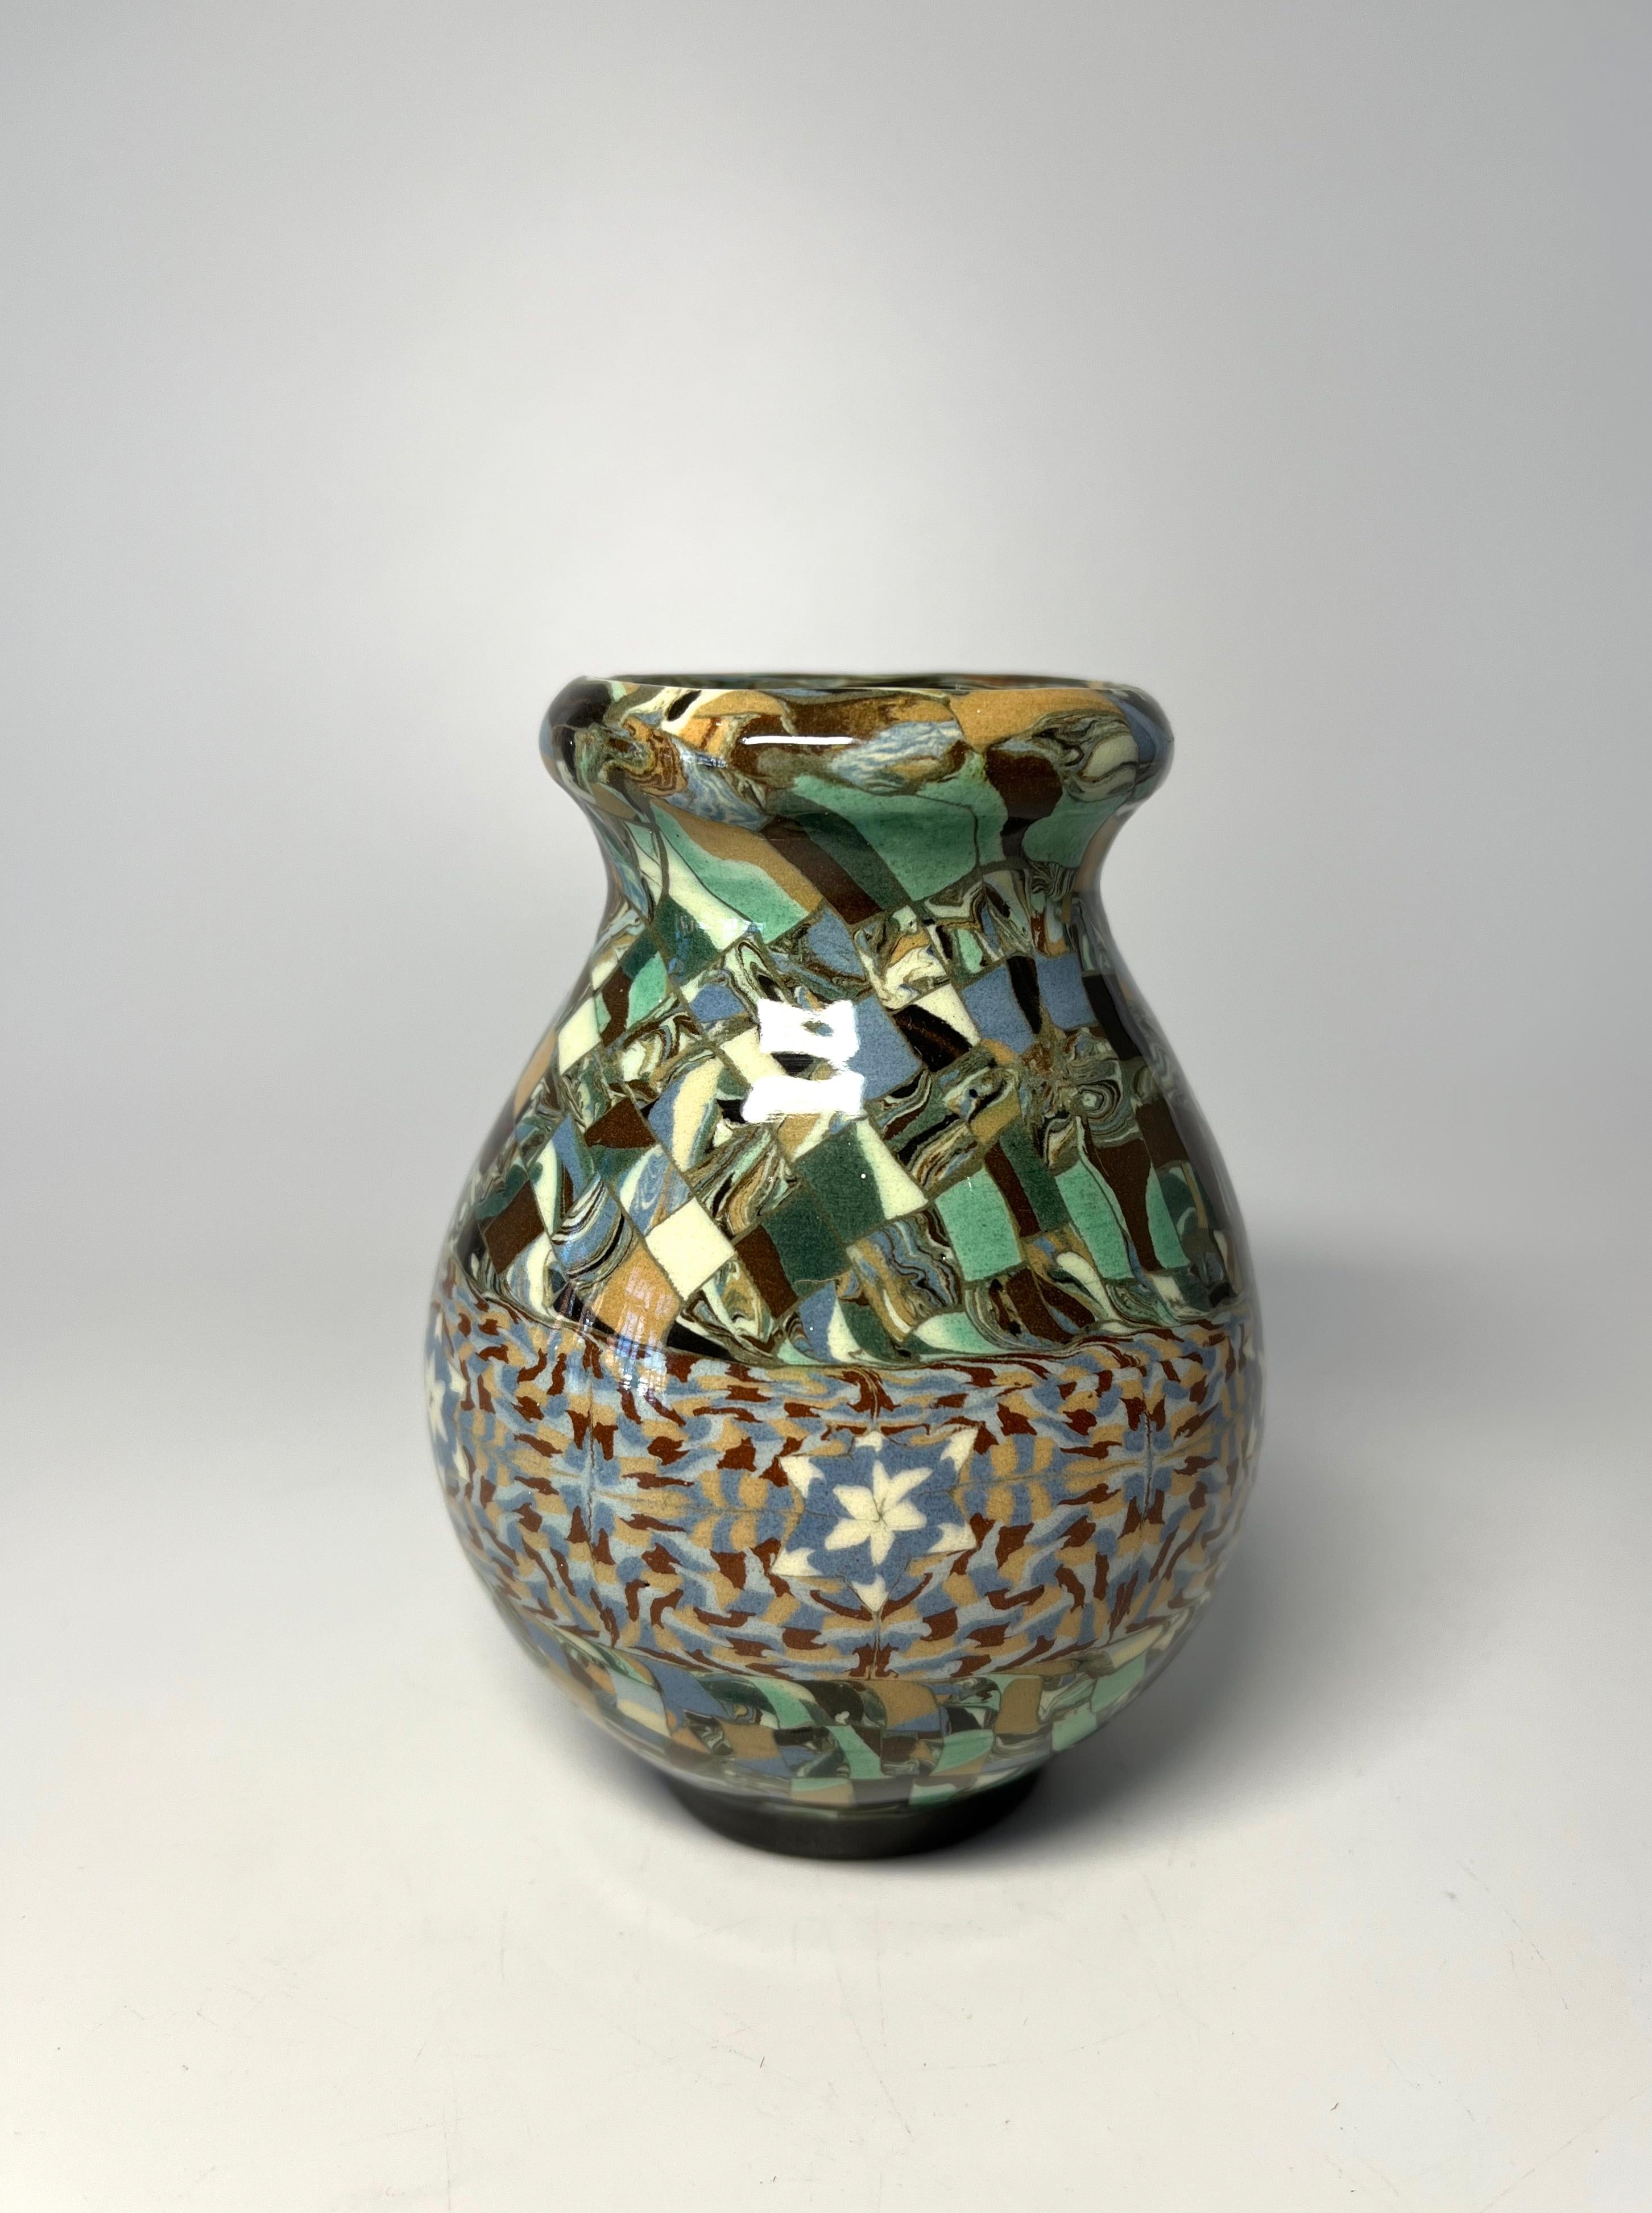 Jean Gerbino für Vallauris, Frankreich, Keramik, glasiertes Mosaik, geformte Vase mit Schneeflockenmotiv
In außergewöhnlichem Originalzustand
CIRCA 1960er Jahre
Unterzeichnet Gerbino  zur Basis
Höhe 4,5 Zoll, Durchmesser 3,5 Zoll, 
In